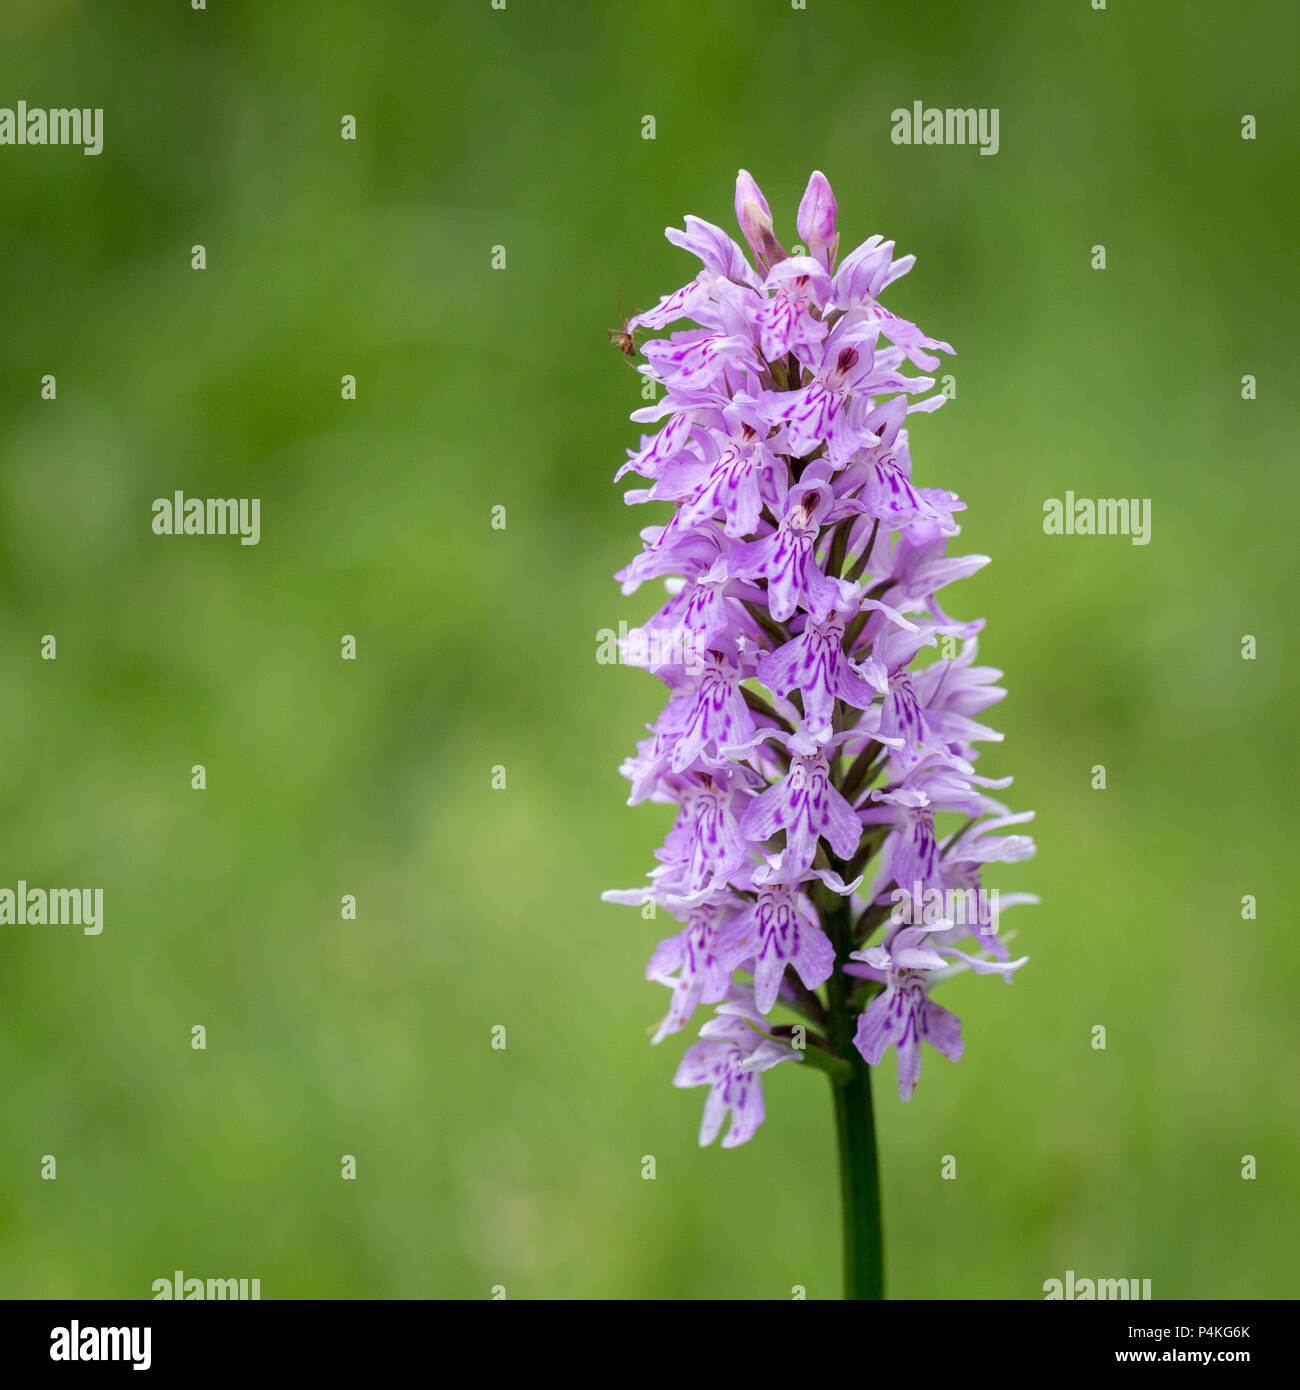 Hybrid orchid Dactylorhiza Stock Photo